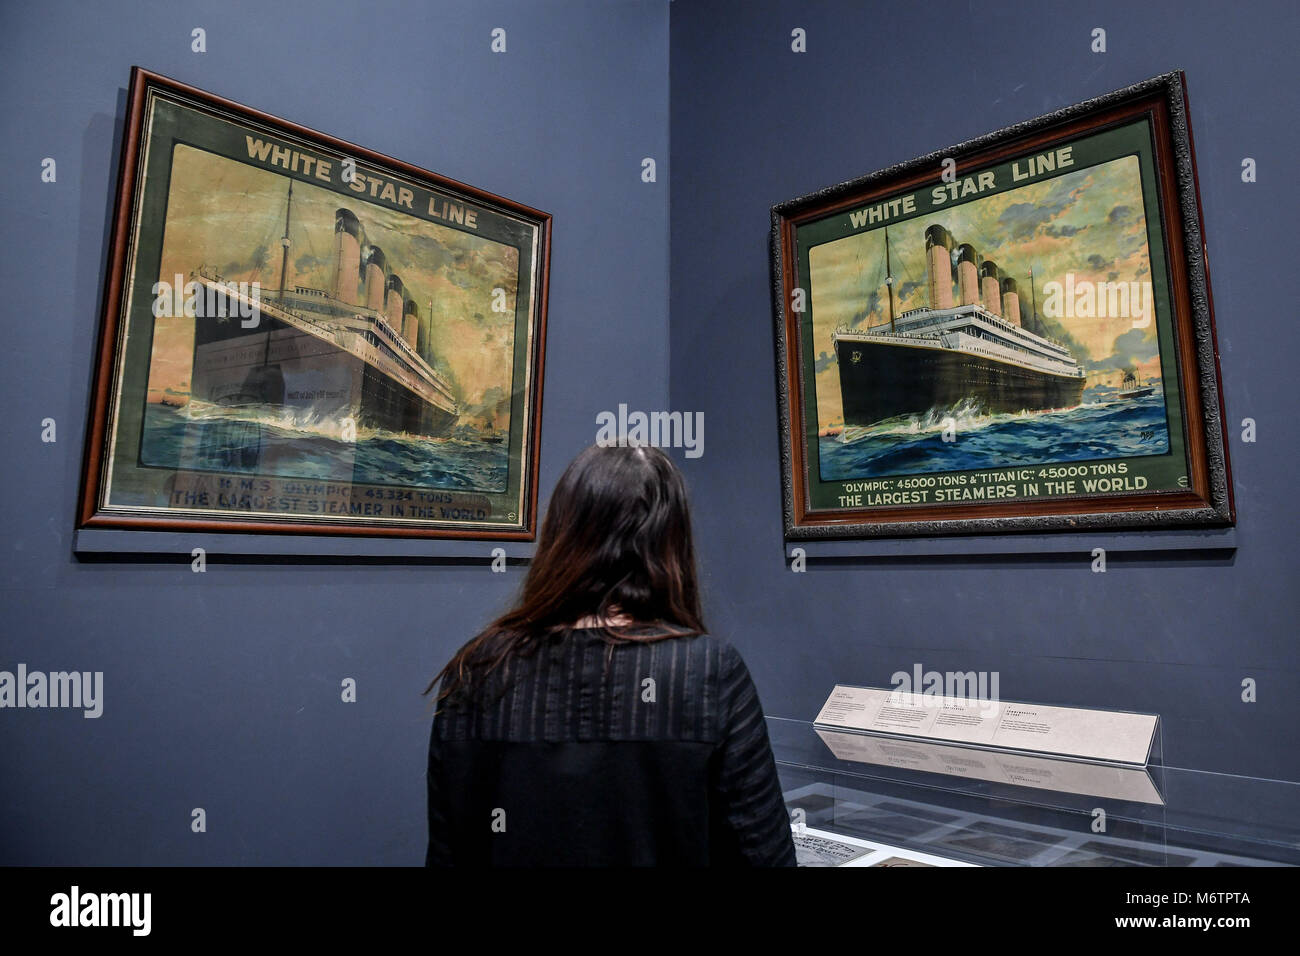 Une femme se penche sur deux affiches de publicité de la compagnie White Star Line, lors d'un aperçu de l'exposition à l'histoire du Titanic National Maritime Museum Cornwall Falmouth, qui s'ouvre le 8 mars. Banque D'Images